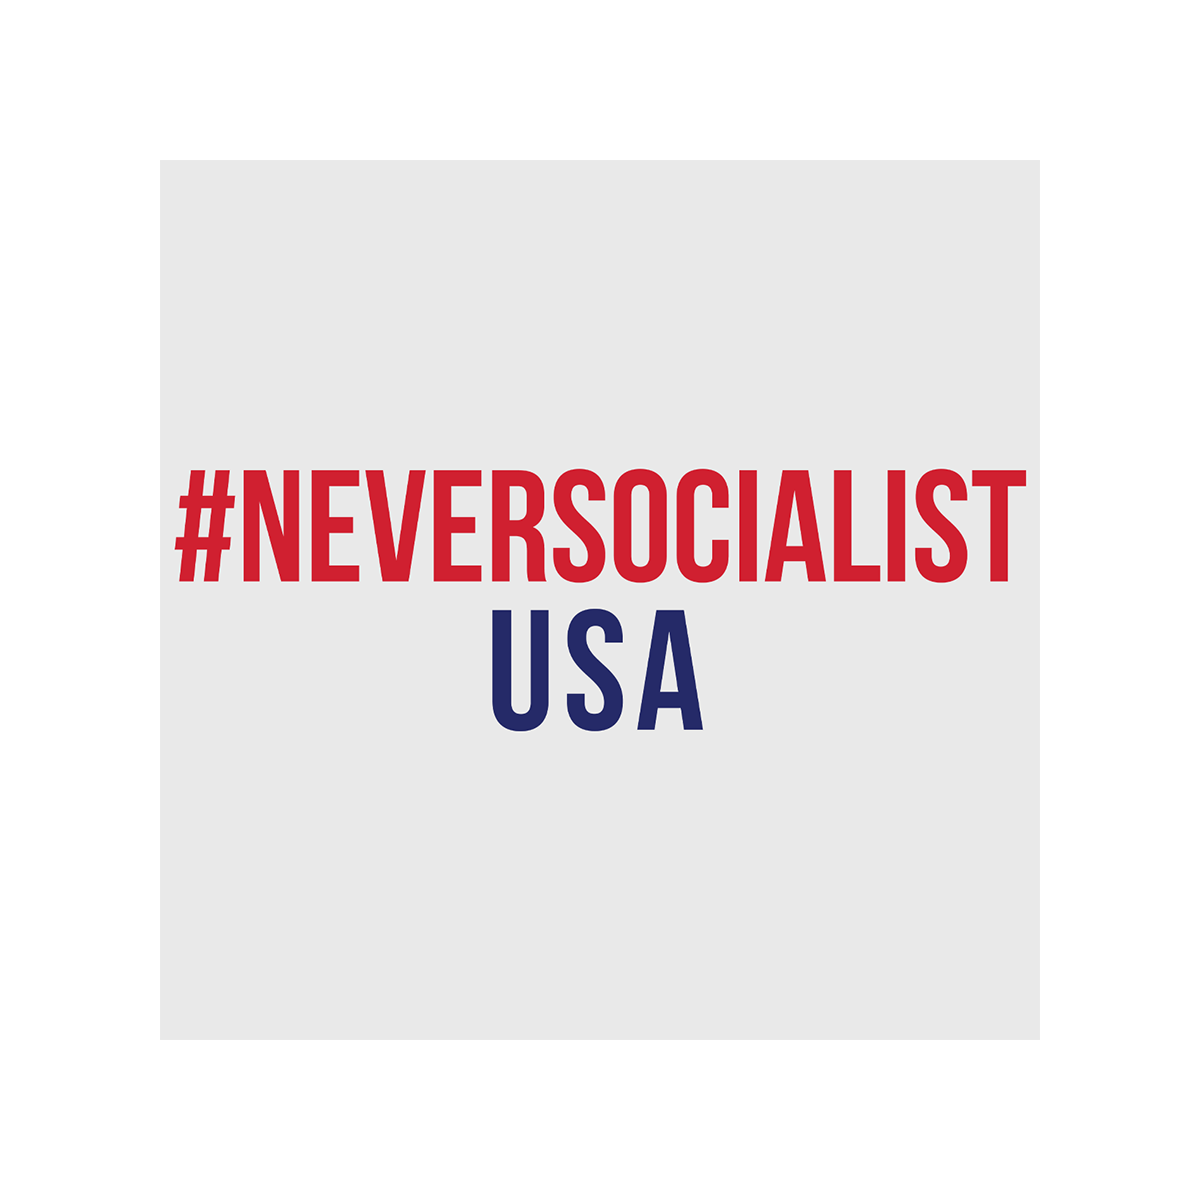 #NeverSocialist Women's USA T-Shirt - White